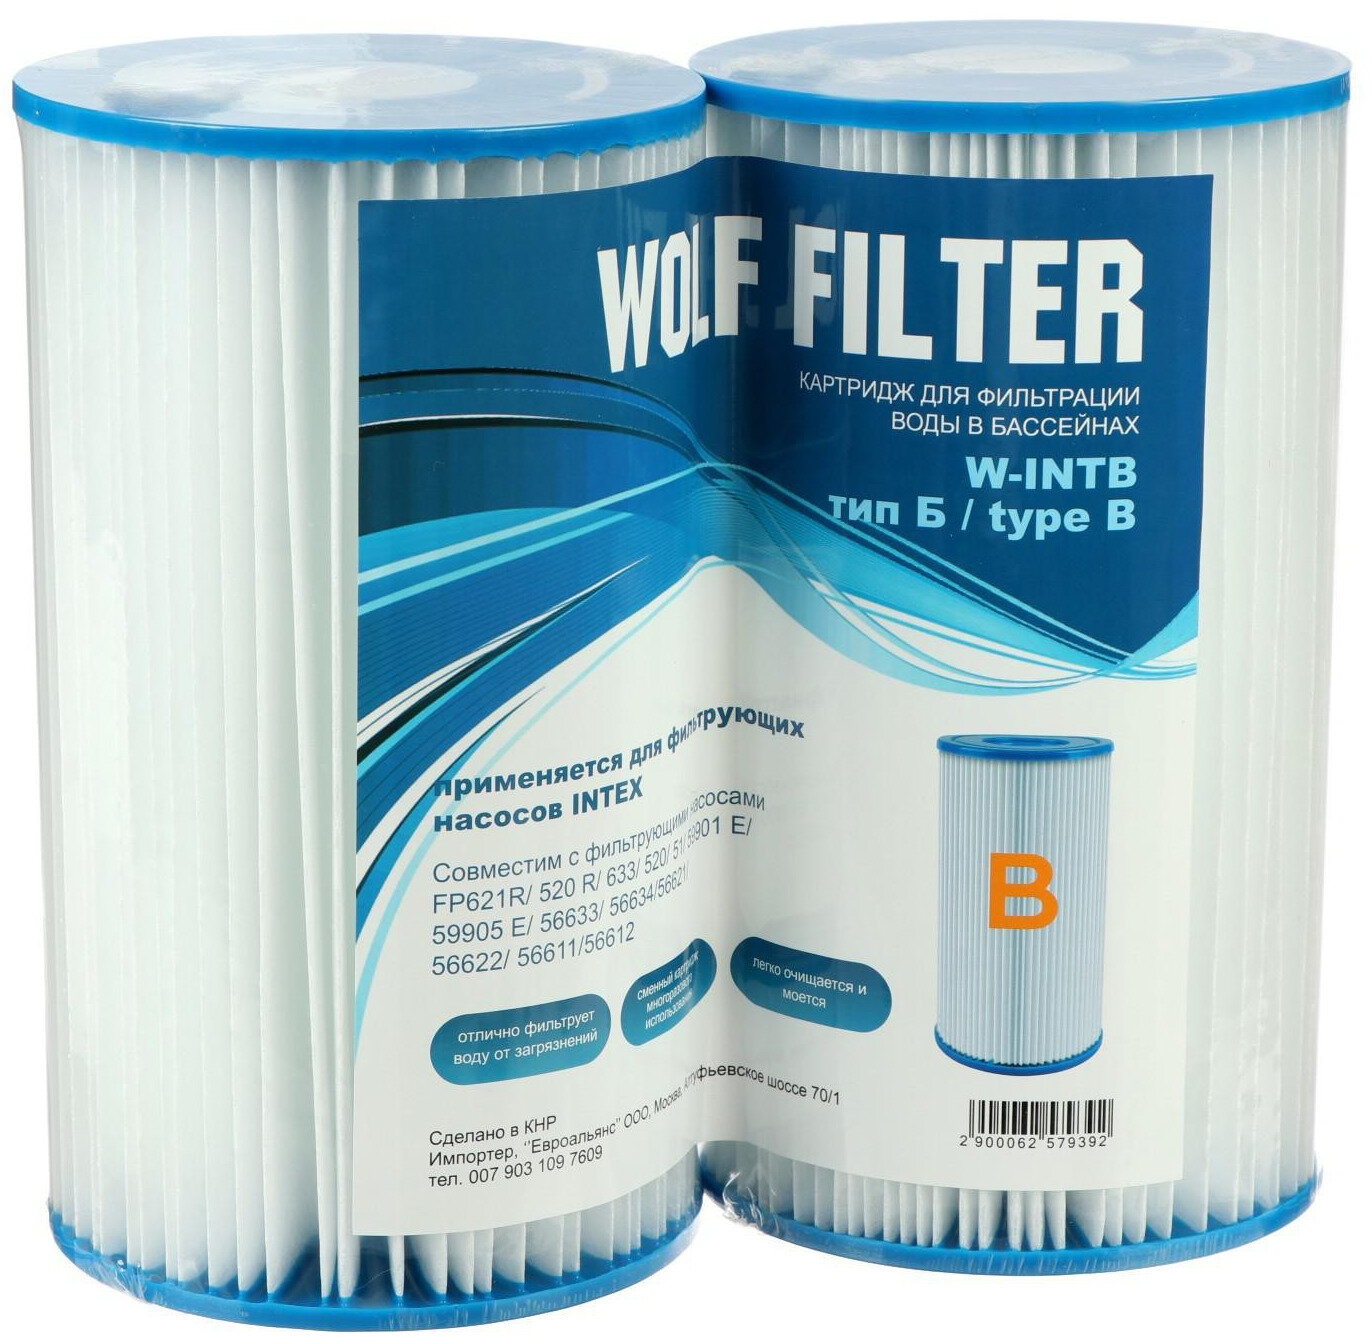 Картридж для очистки воды в бассейнах INTEX для фильтрующих насосов, тип В, набор из 2 сменных фильтр-картриджей многоразового использования для надувных и каркасных бассейнов